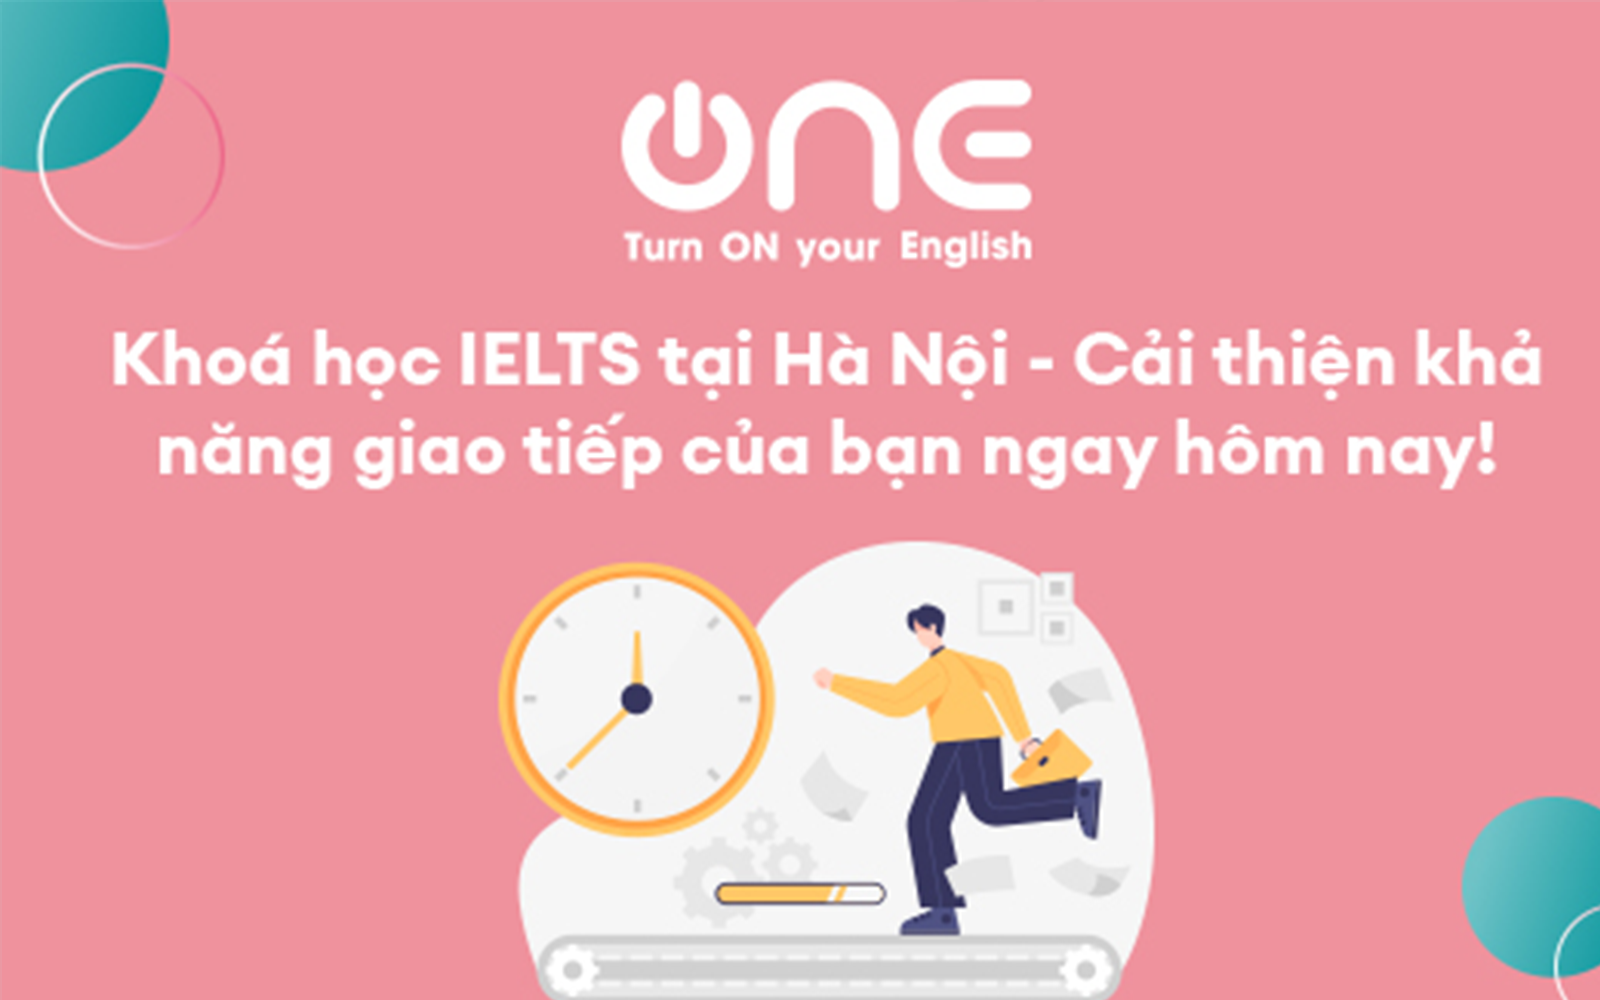 Khoá học IELTS tại Hà Nội - Cải thiện khả năng giao tiếp của bạn ngay hôm nay!